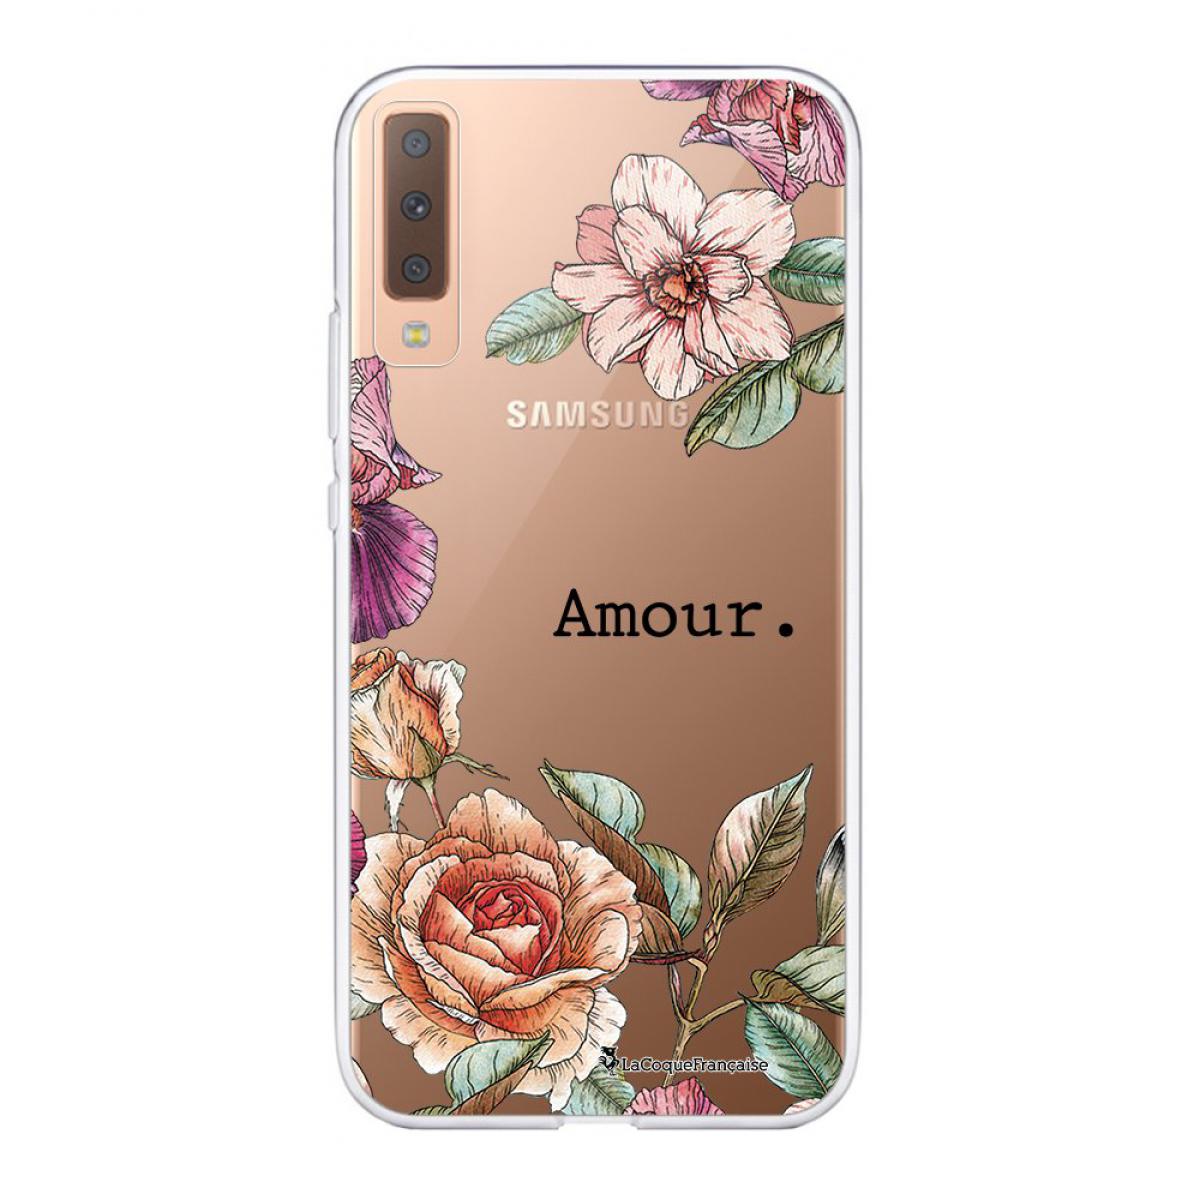 La Coque Francaise - Coque Samsung Galaxy A7 2018 souple transparente Amour en fleurs Motif Ecriture Tendance La Coque Francaise - Coque, étui smartphone